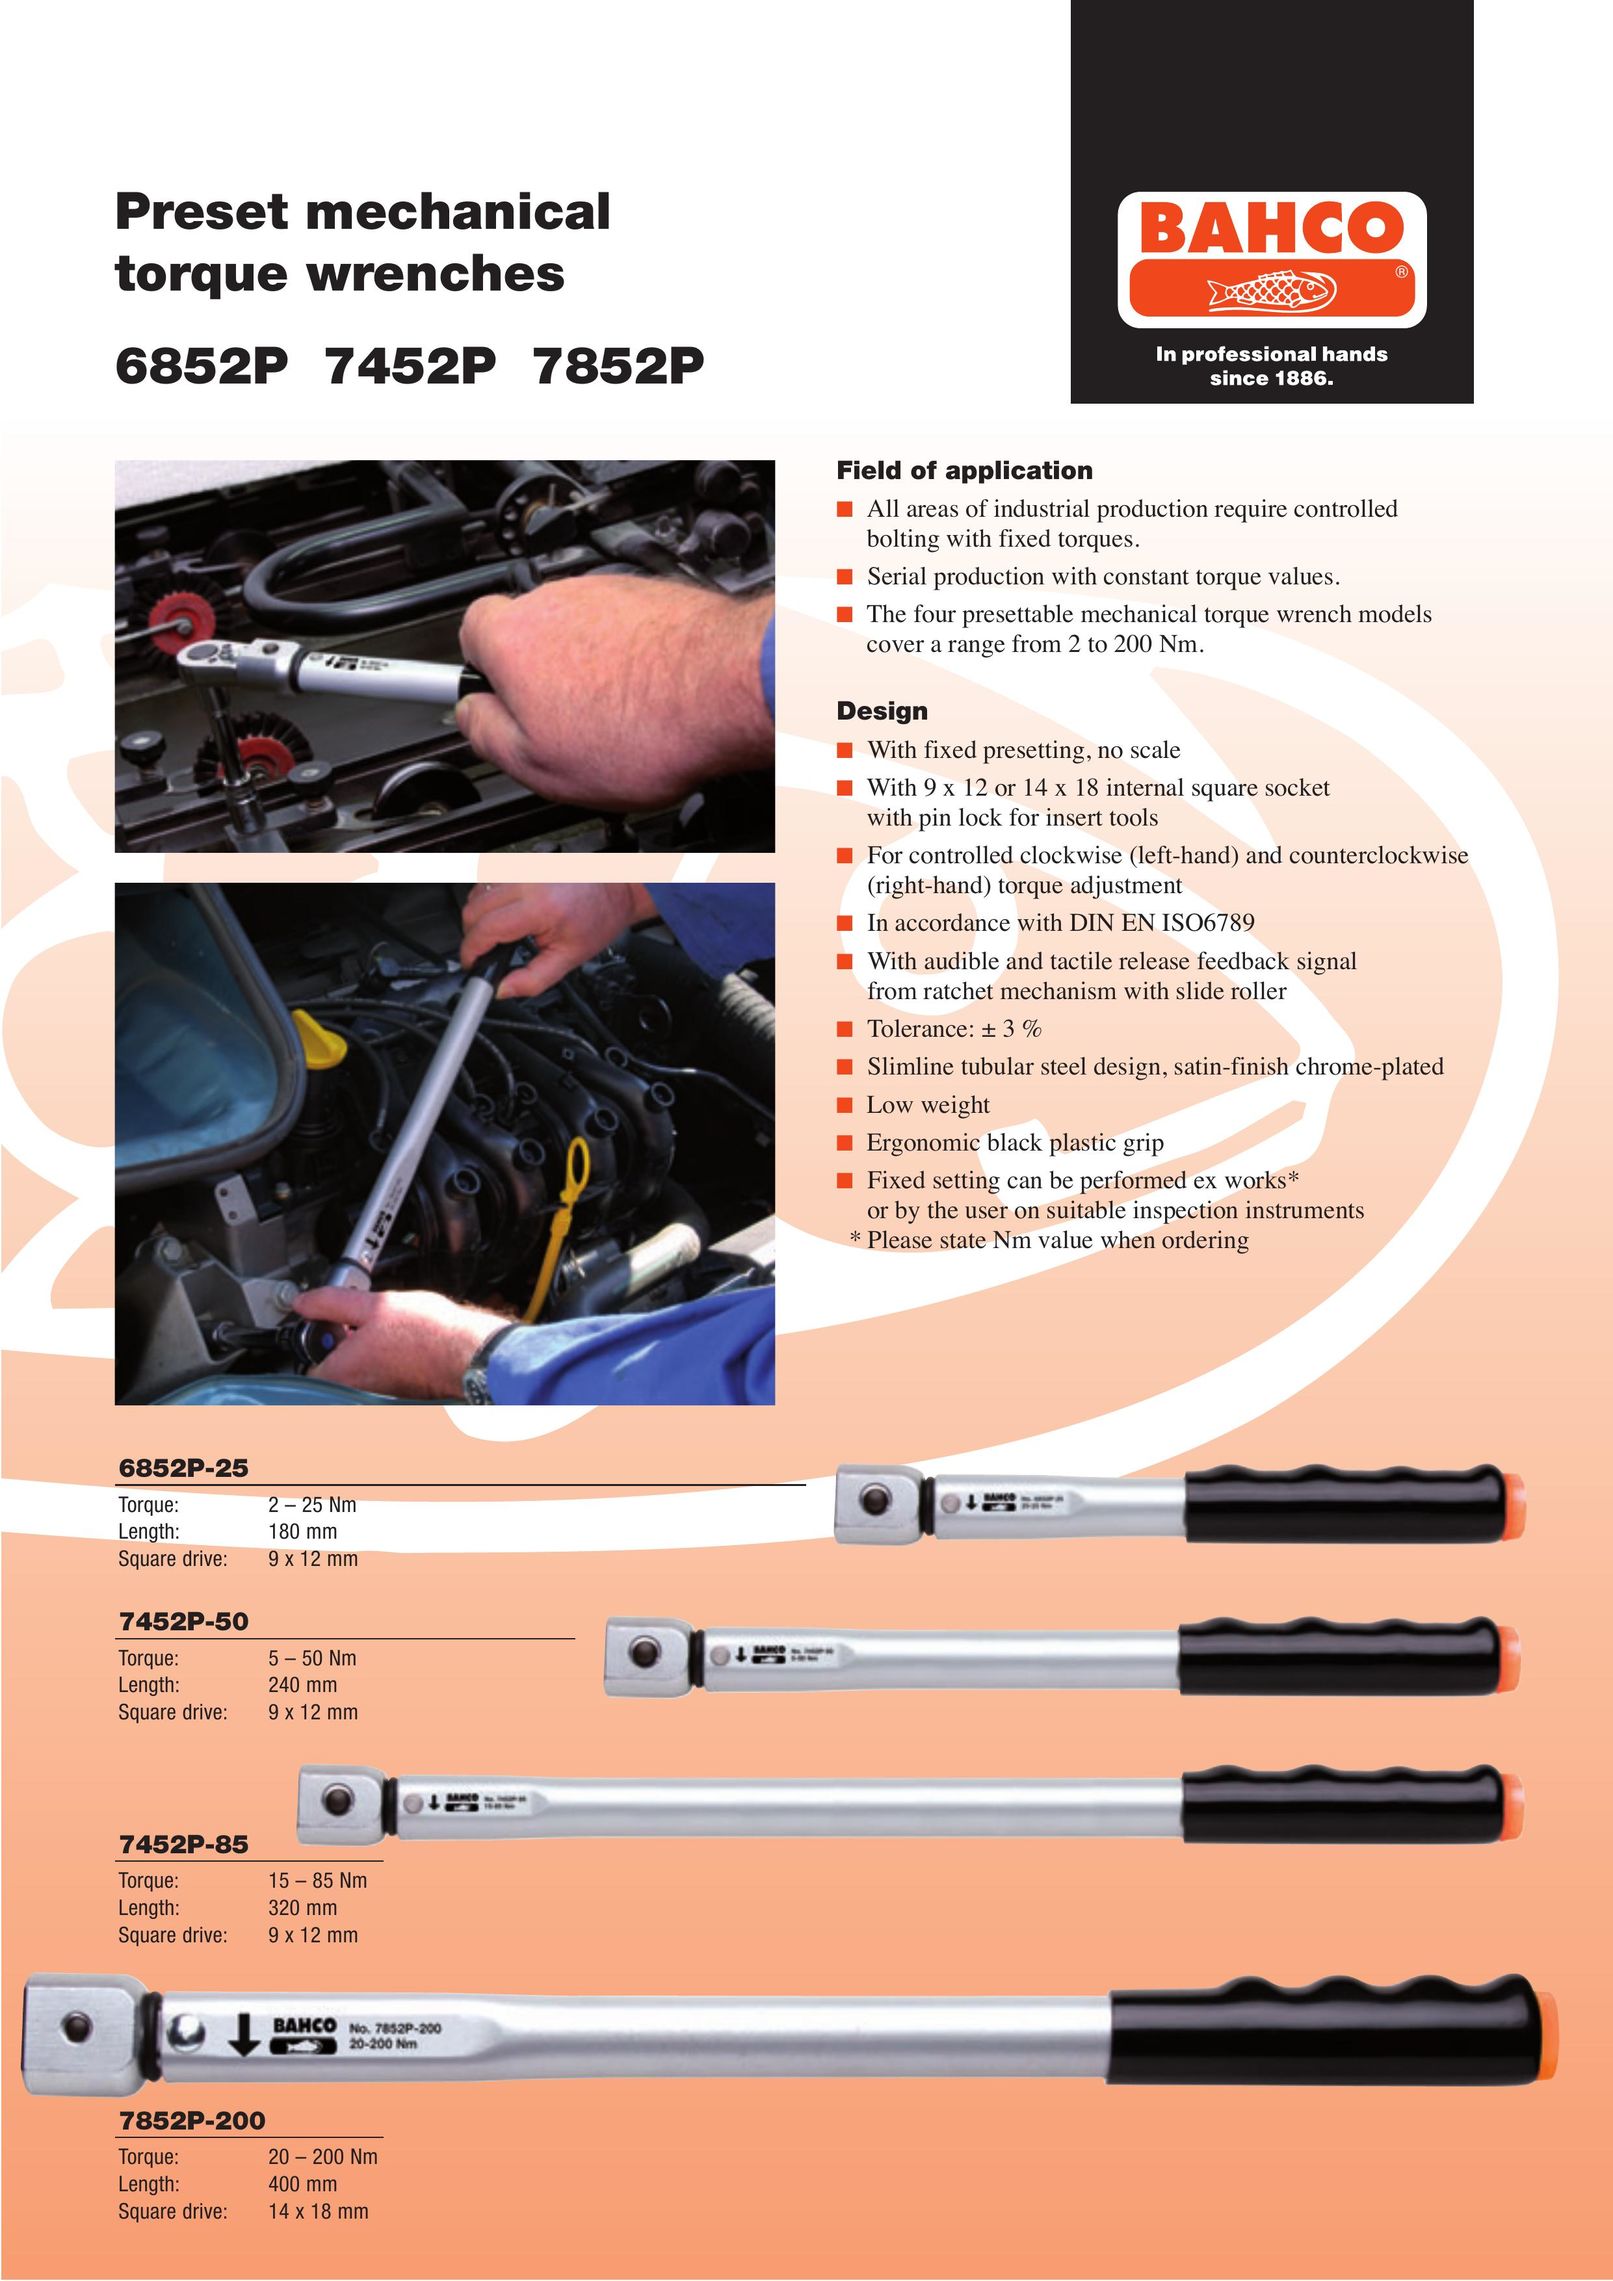 Bahco 7852P Impact Driver User Manual